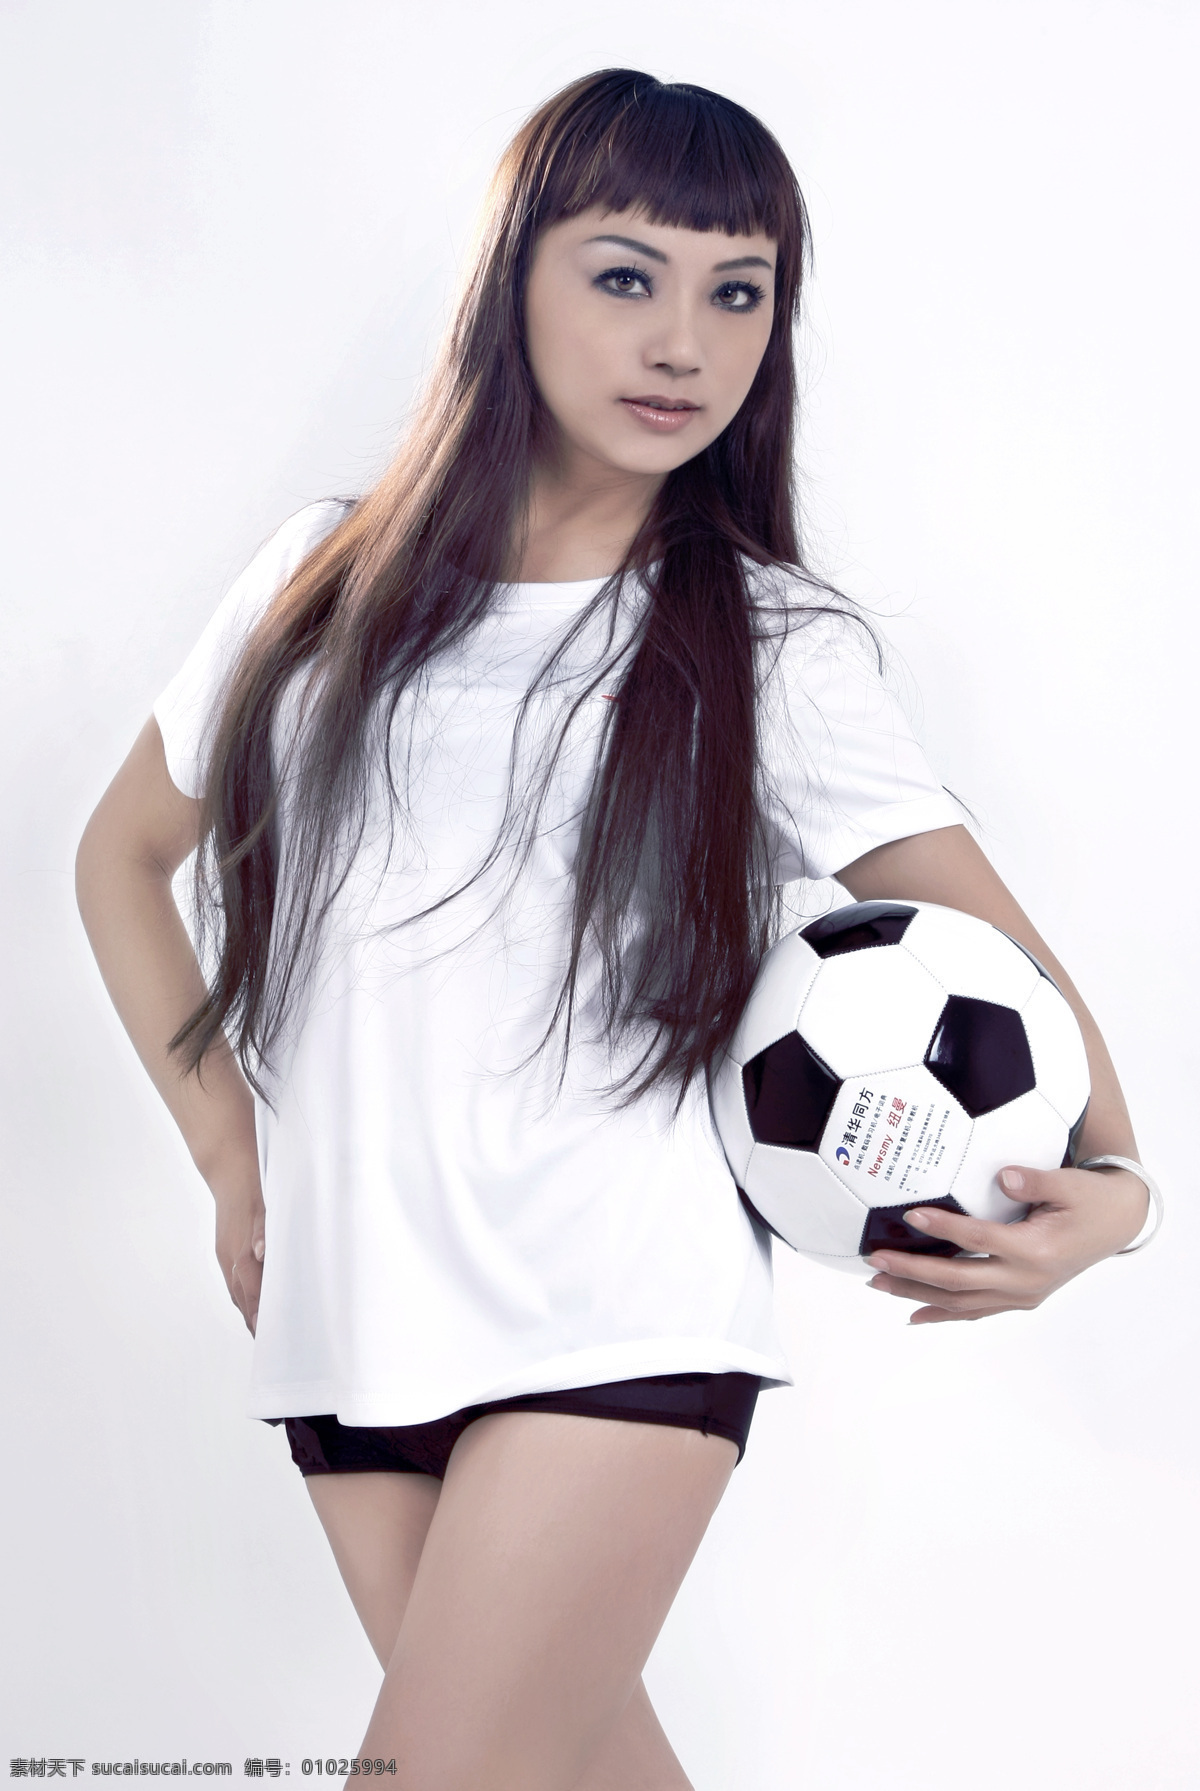 宝贝 长发 个性 美女 女性女人 人物图库 时尚 足球宝贝 足球 造型 室内 矢量图 日常生活